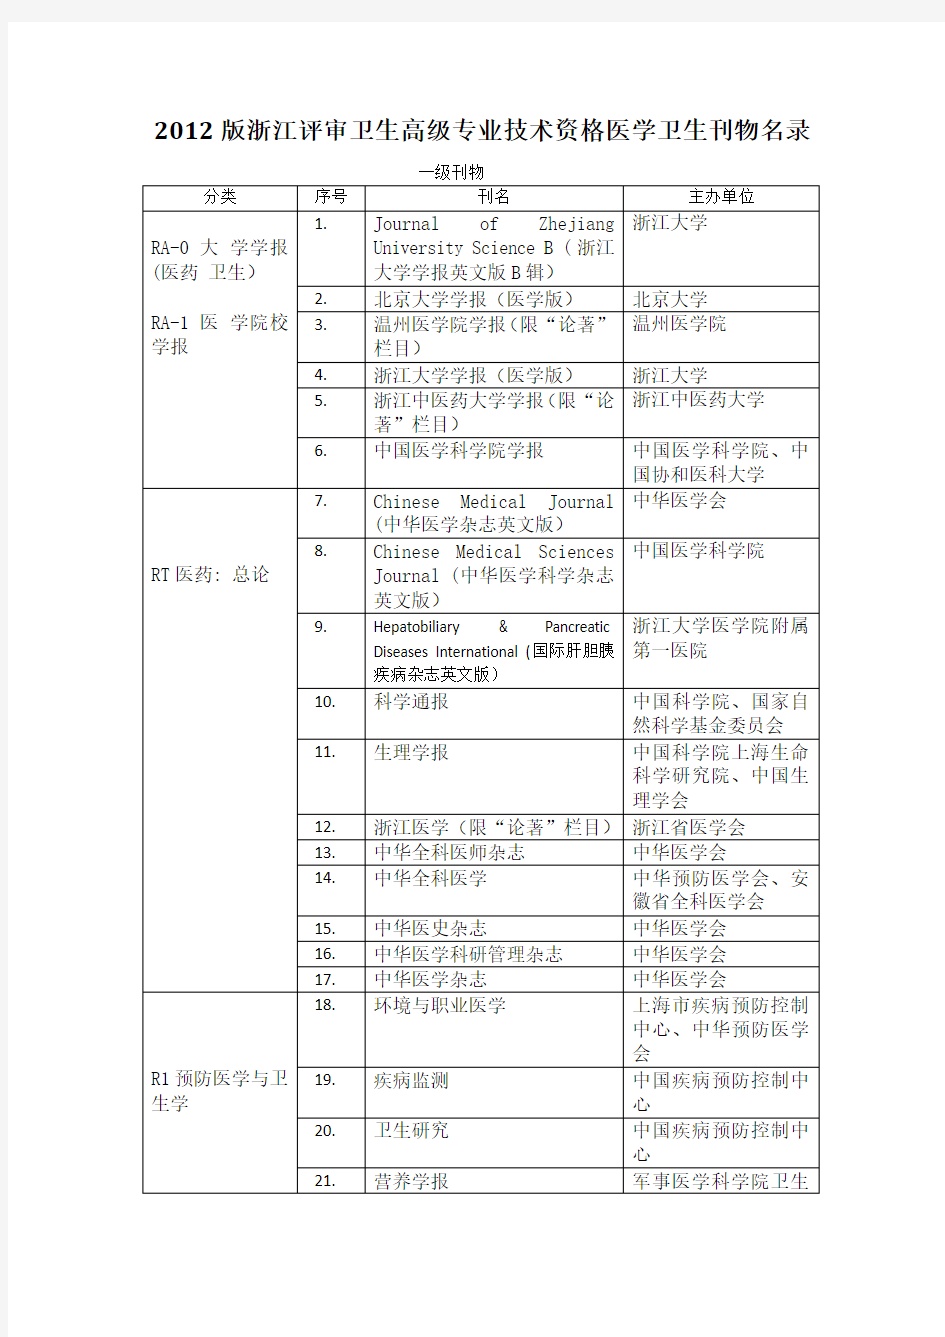 2015版浙江评审卫生高级专业技术资格医学卫生刊物名录